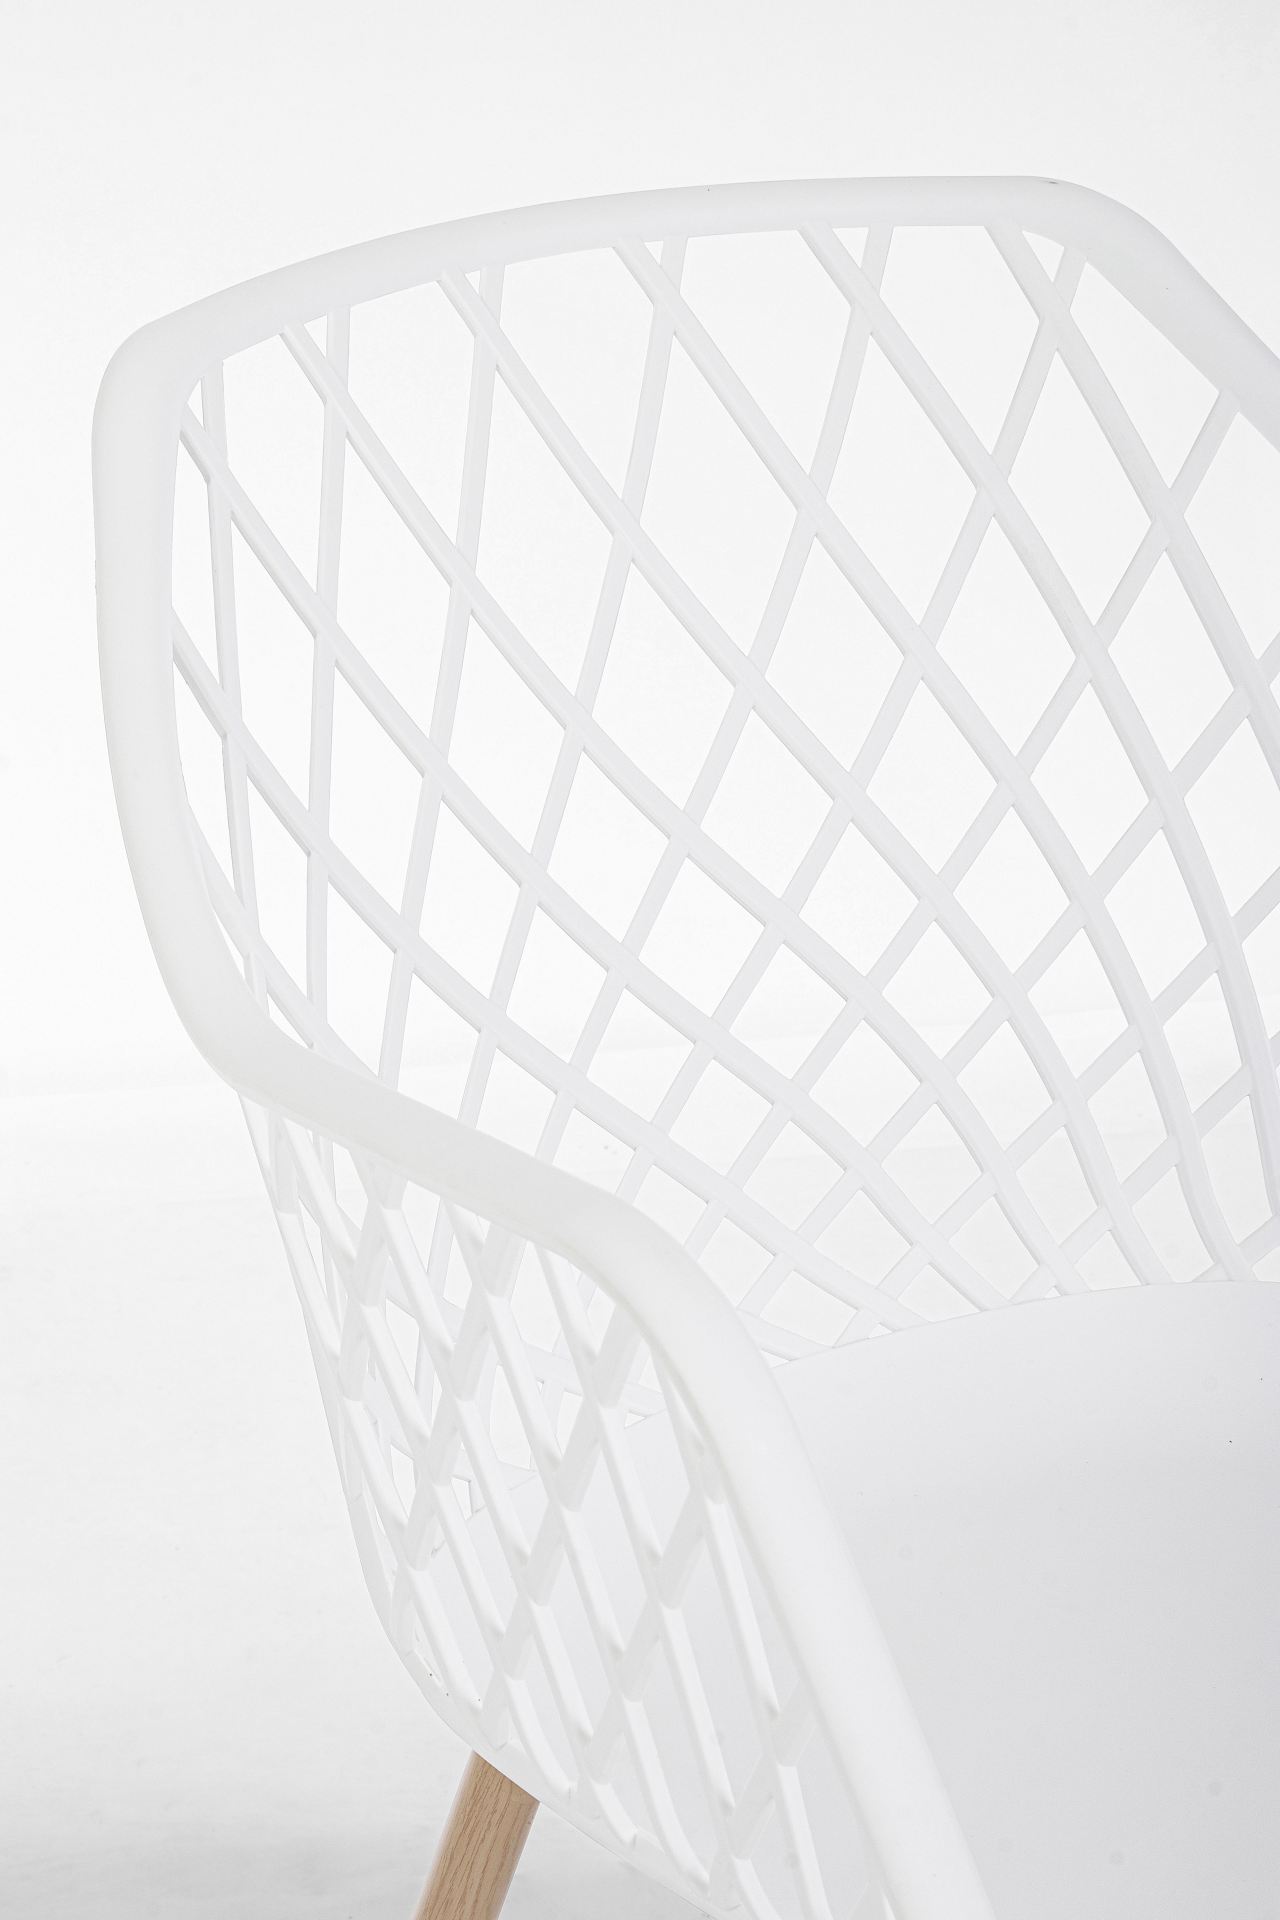 Der Stuhl Optik wurde aus Kunststoff gefertigt, welcher einen weißen Farbton besitzt. Das Gestell ist aus Metall und hat eine Holz-Optik. Das Design des Stuhls ist modern gehalten. Die Sitzhöhe beträgt 44 cm.